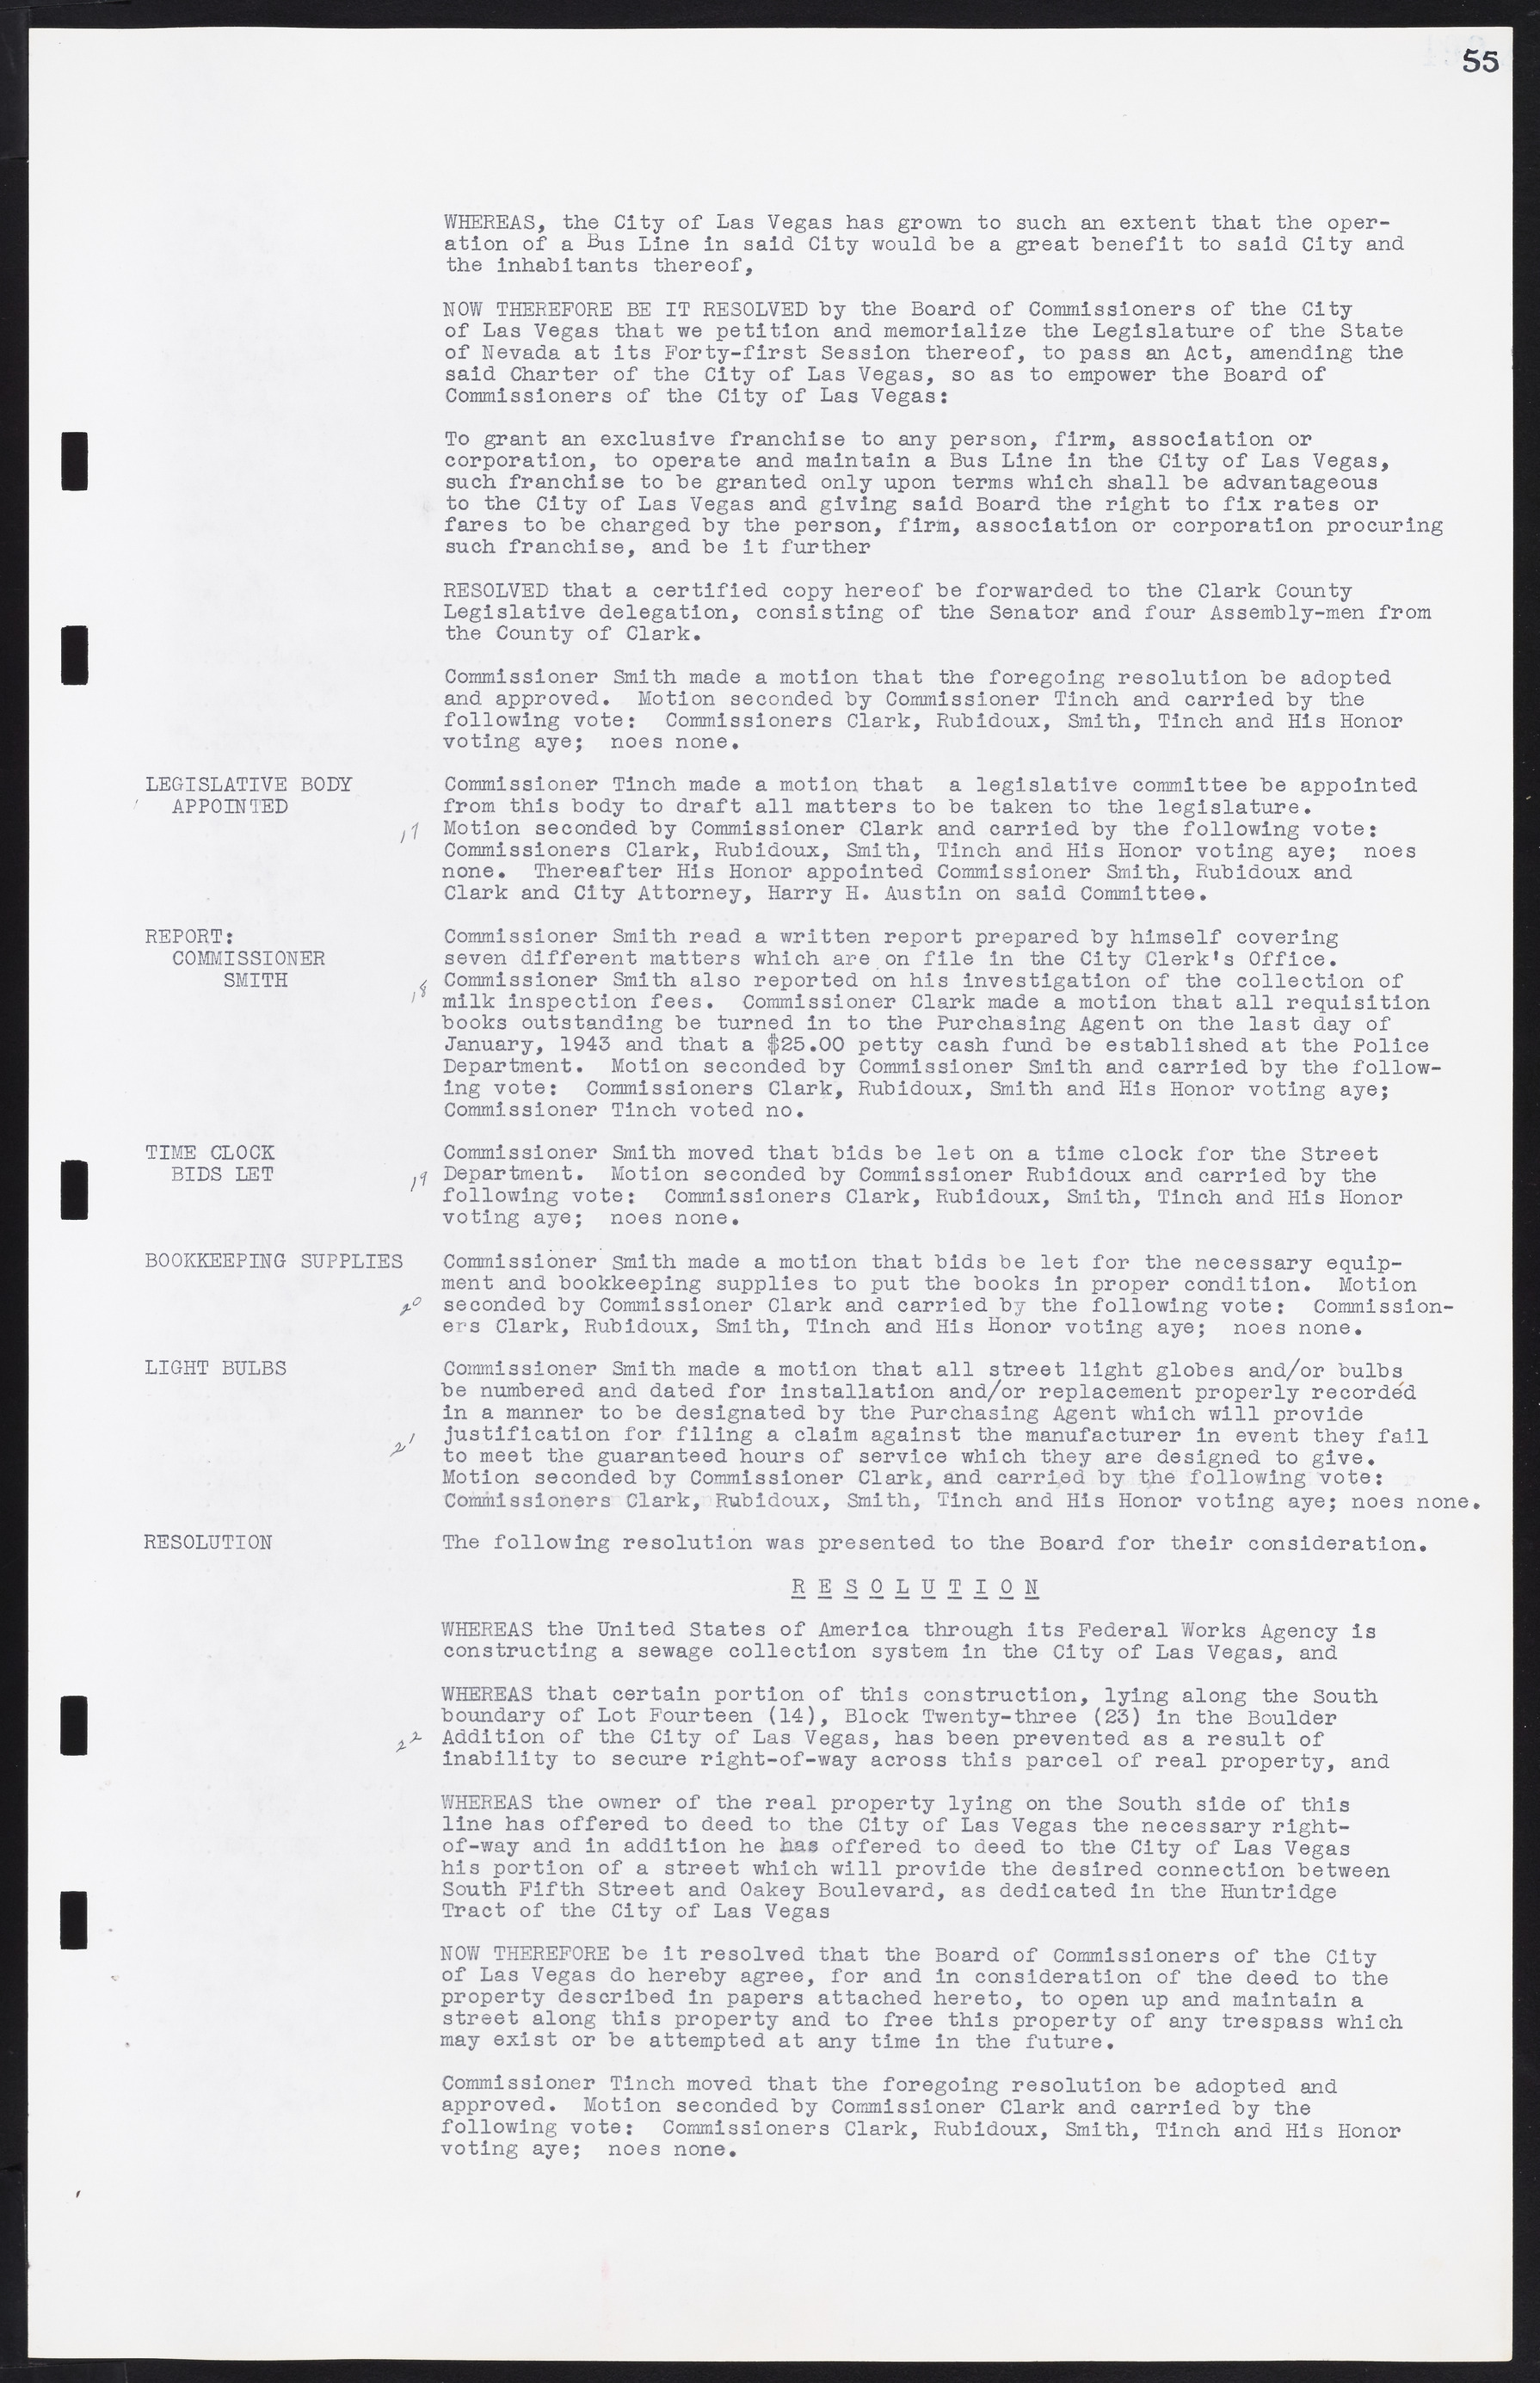 Las Vegas City Commission Minutes, August 11, 1942 to December 30, 1946, lvc000005-67